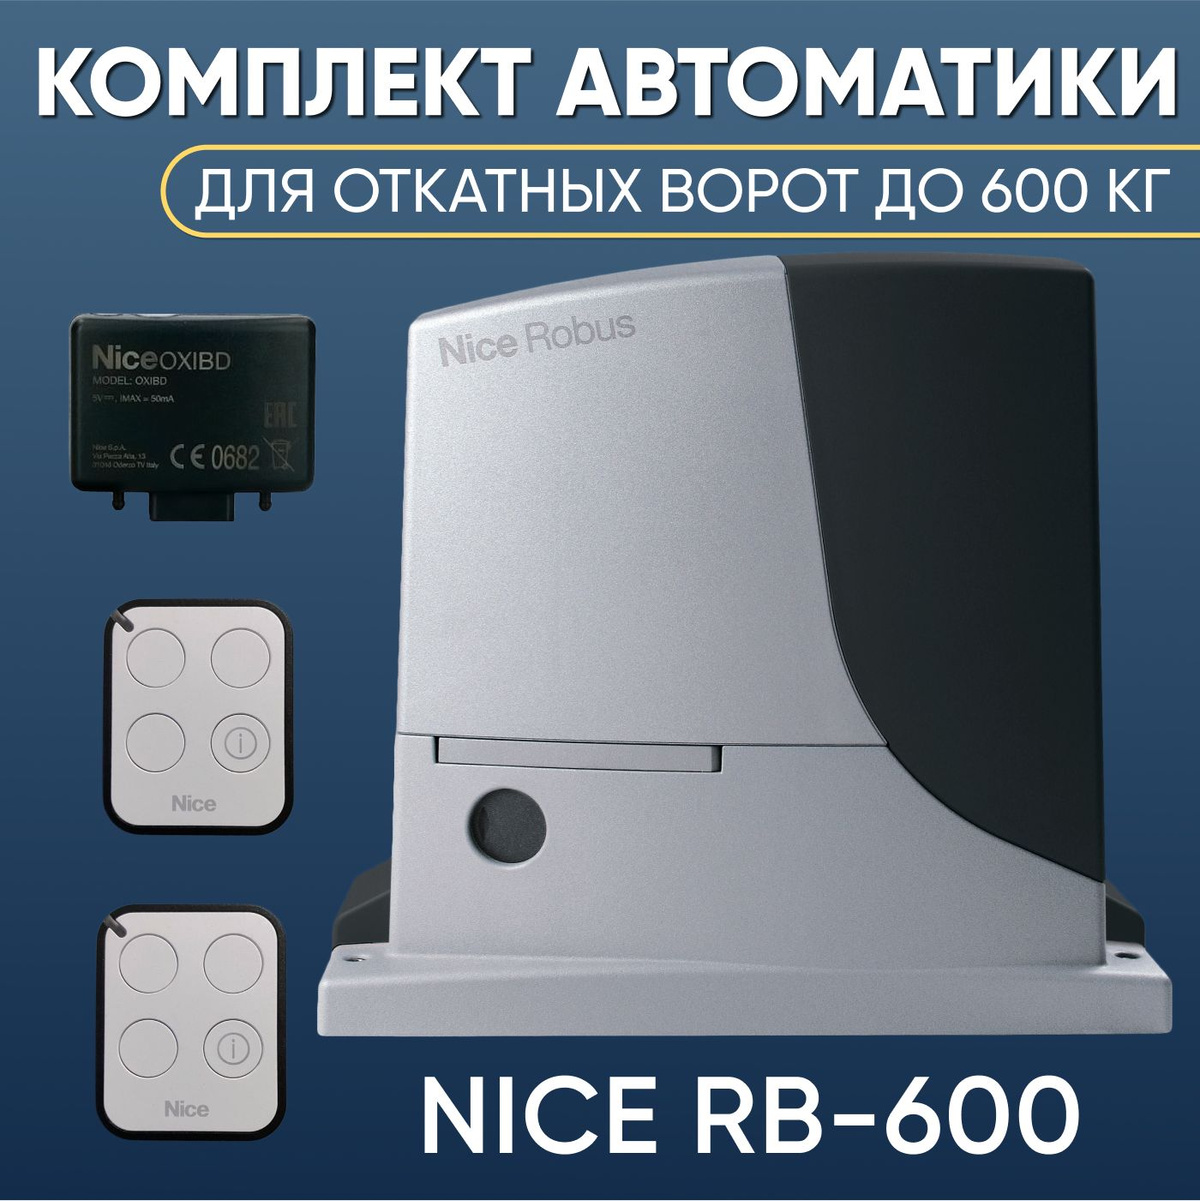 Комплект автоматики для откатных ворот Nice RB600KIT-ON3EBD. Привод Nice RB600, Радиоприемник Nice OXI BD, два пульта управления NICE ON3EBD